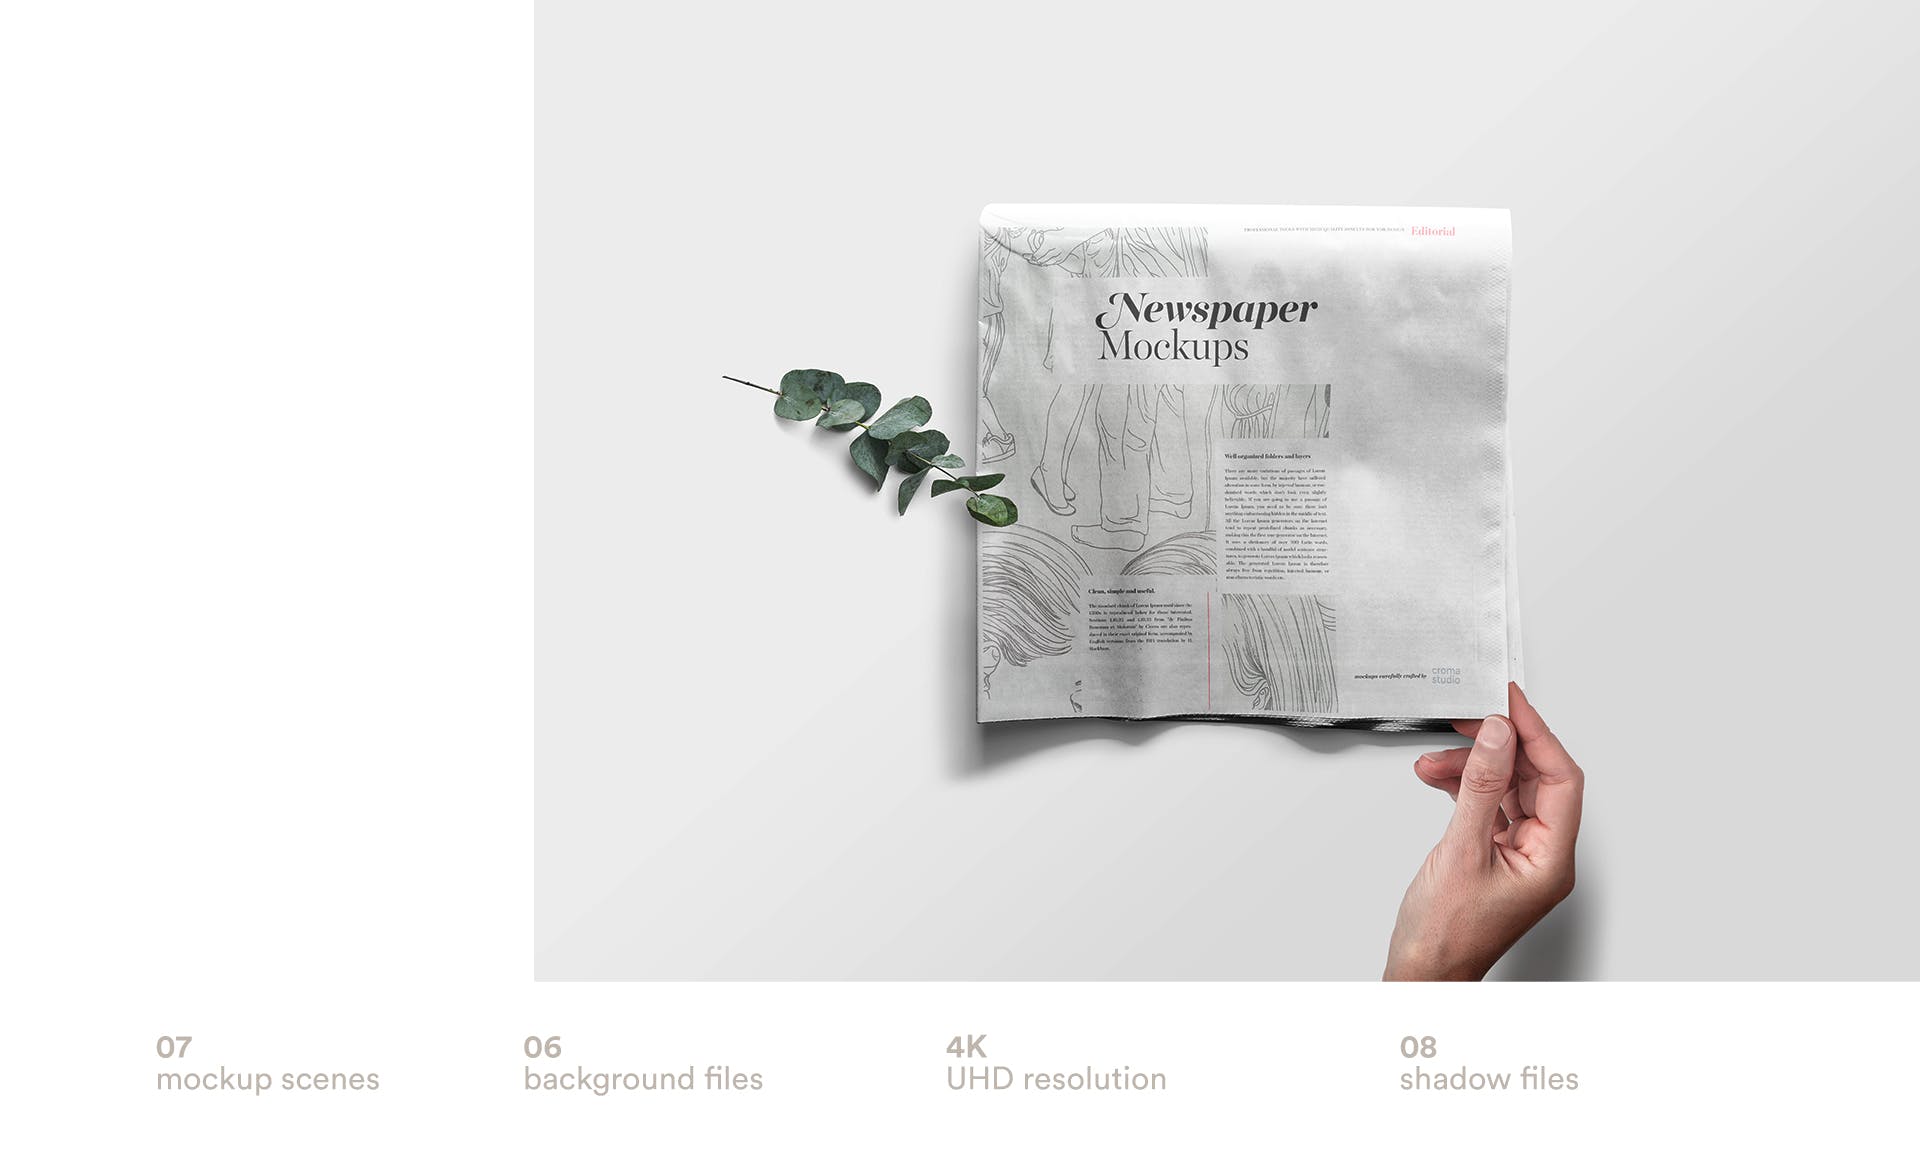 报纸版式设计排版效果图展示样机模板 Newspaper Mockup Templates插图(2)